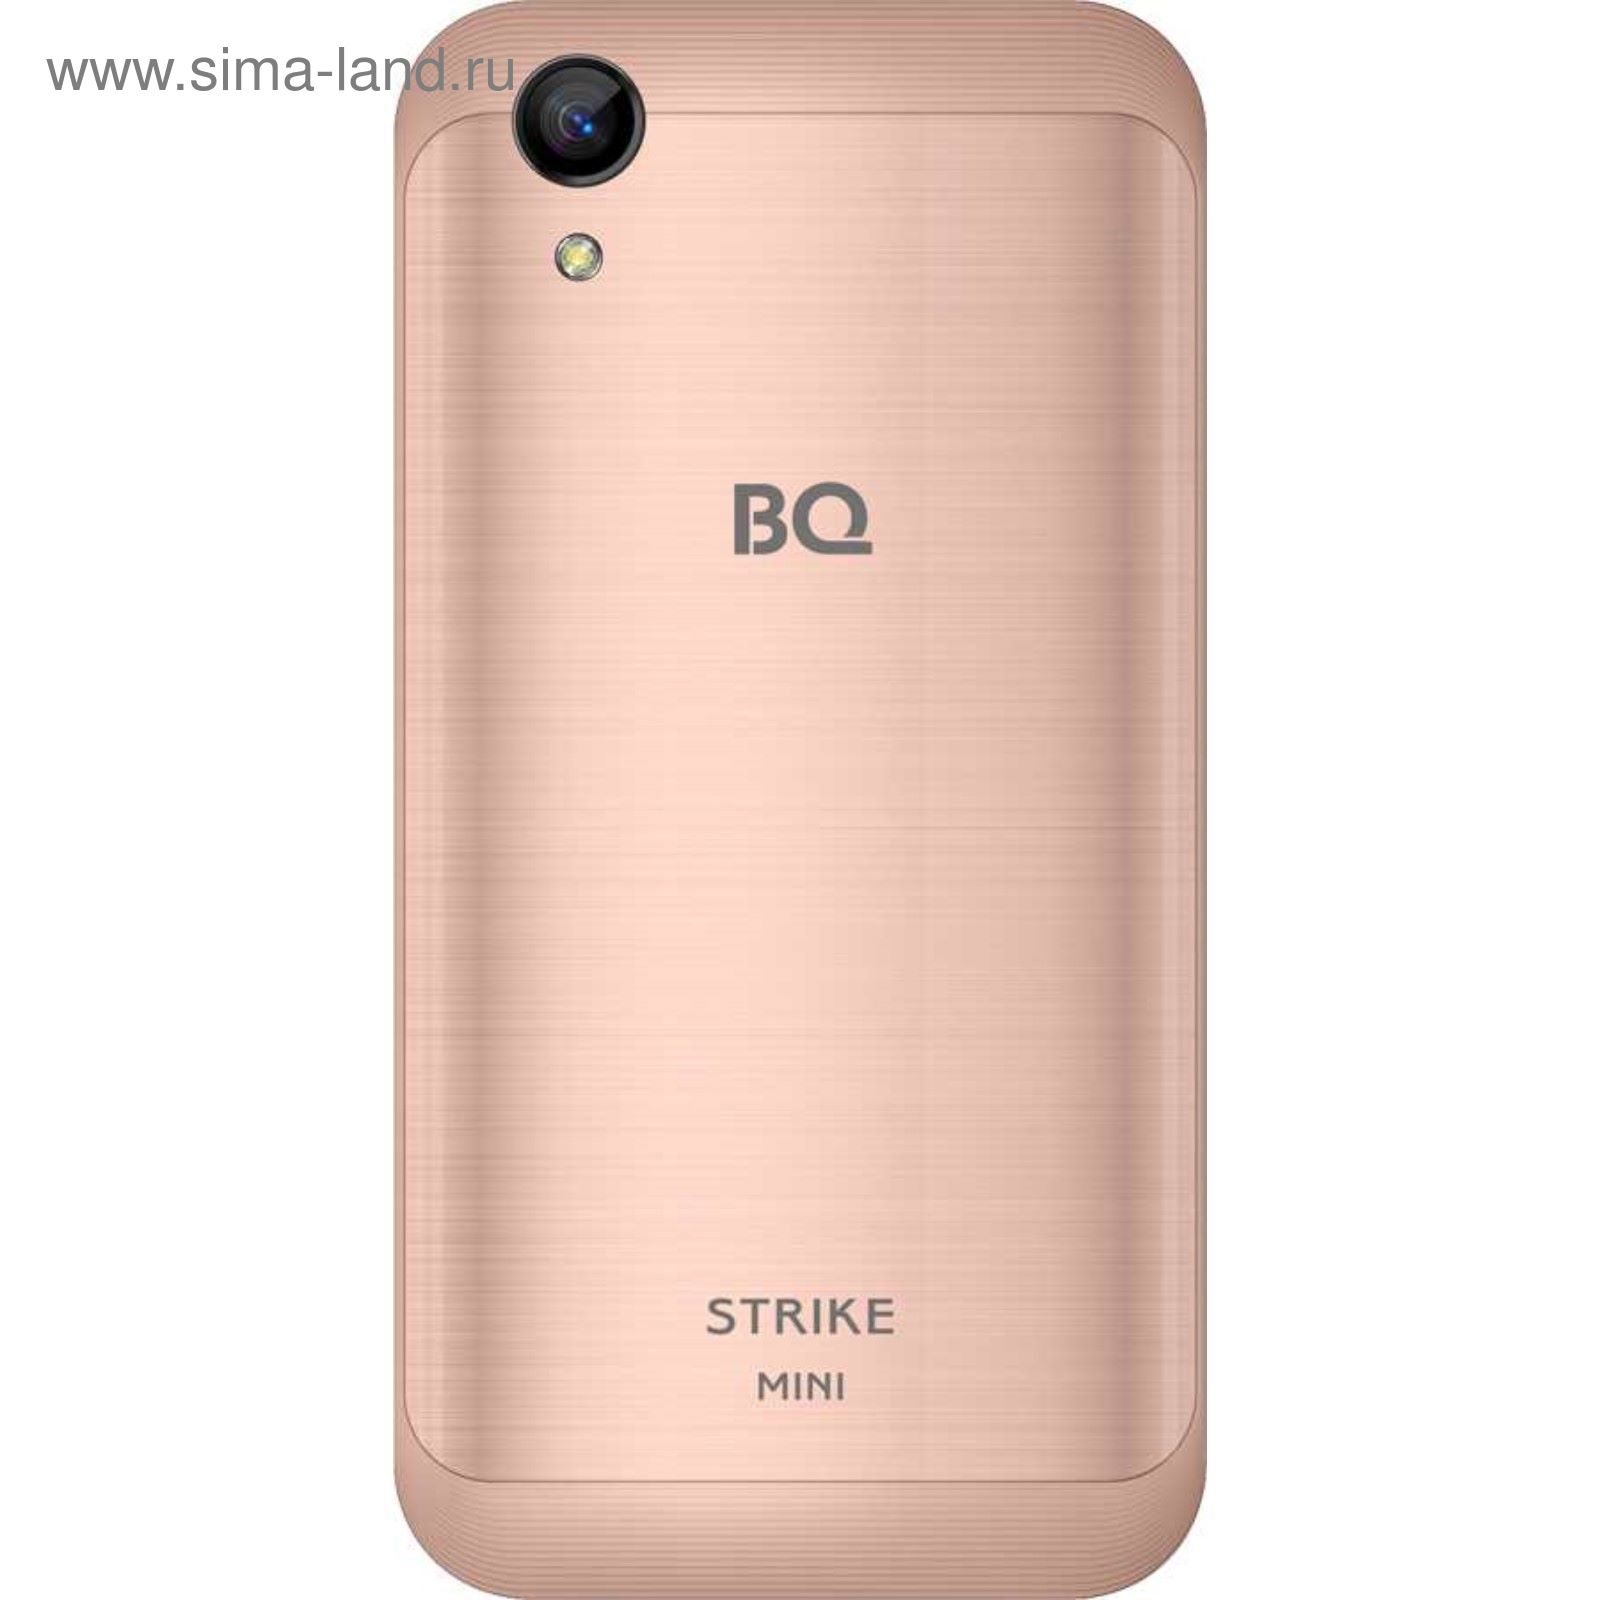 Bq сенсорные. BQ 4072 Strike Mini. BQ BQ-4072 Strike Mini. Телефон BQ Strike Mini 4072. BQ 4072 Strike Mini Black.